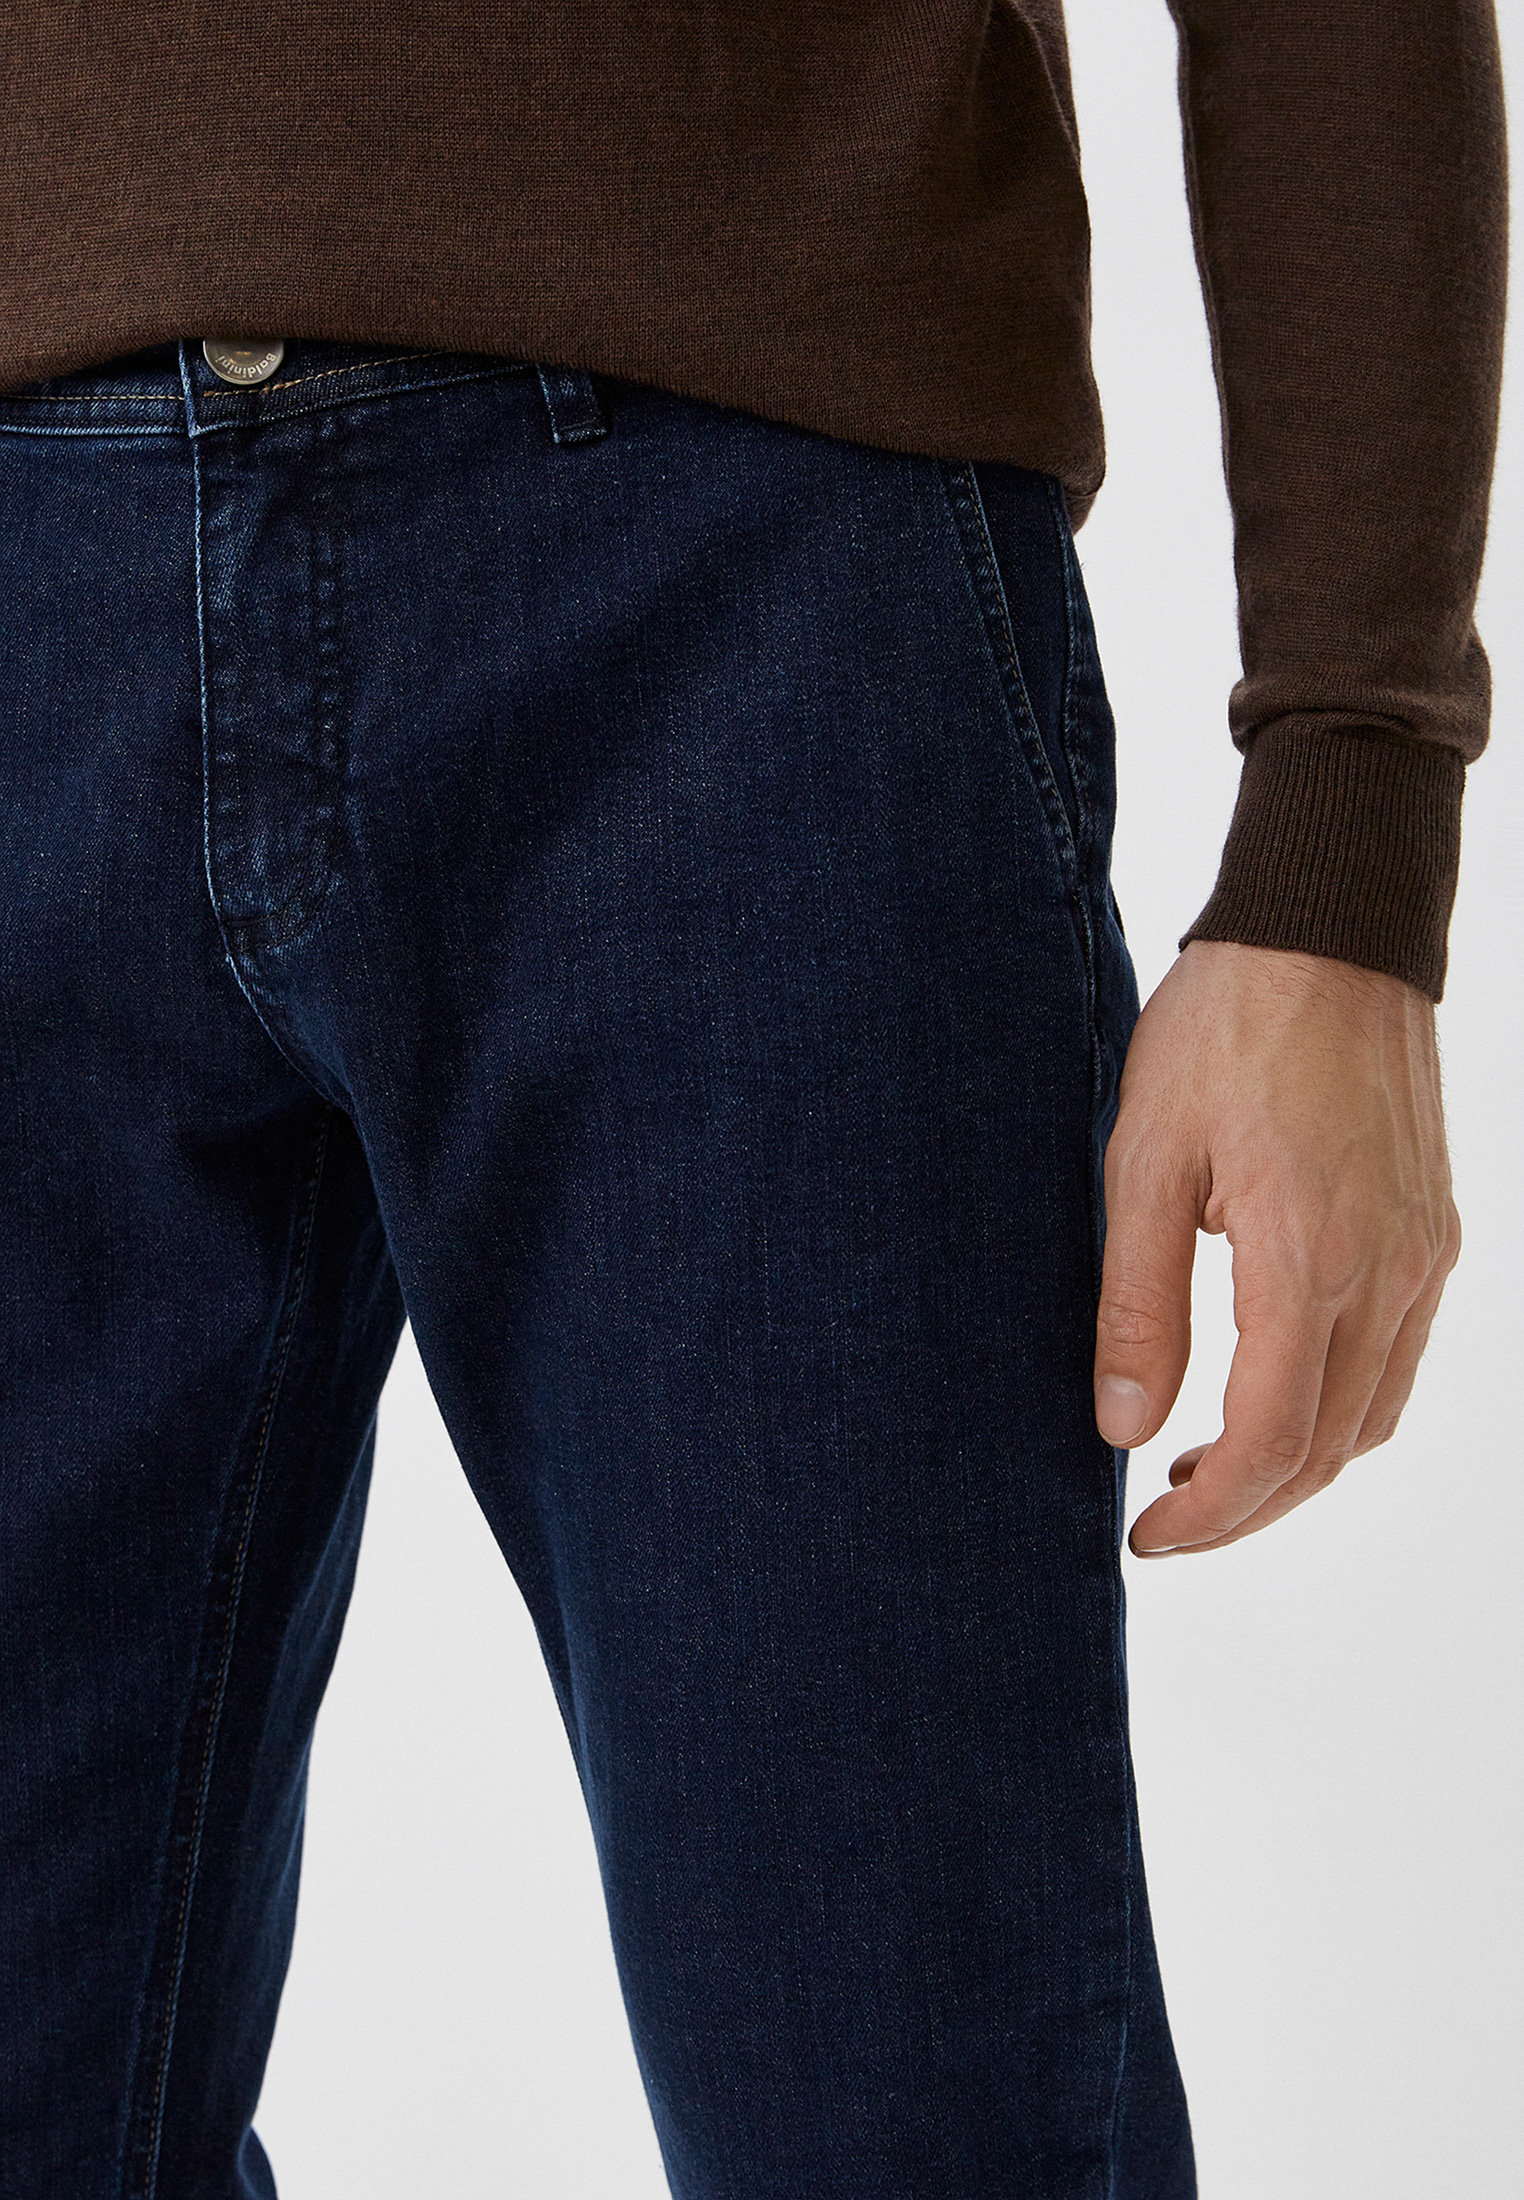 Мужские прямые джинсы Baldinini (Балдинини) M11: изображение 4